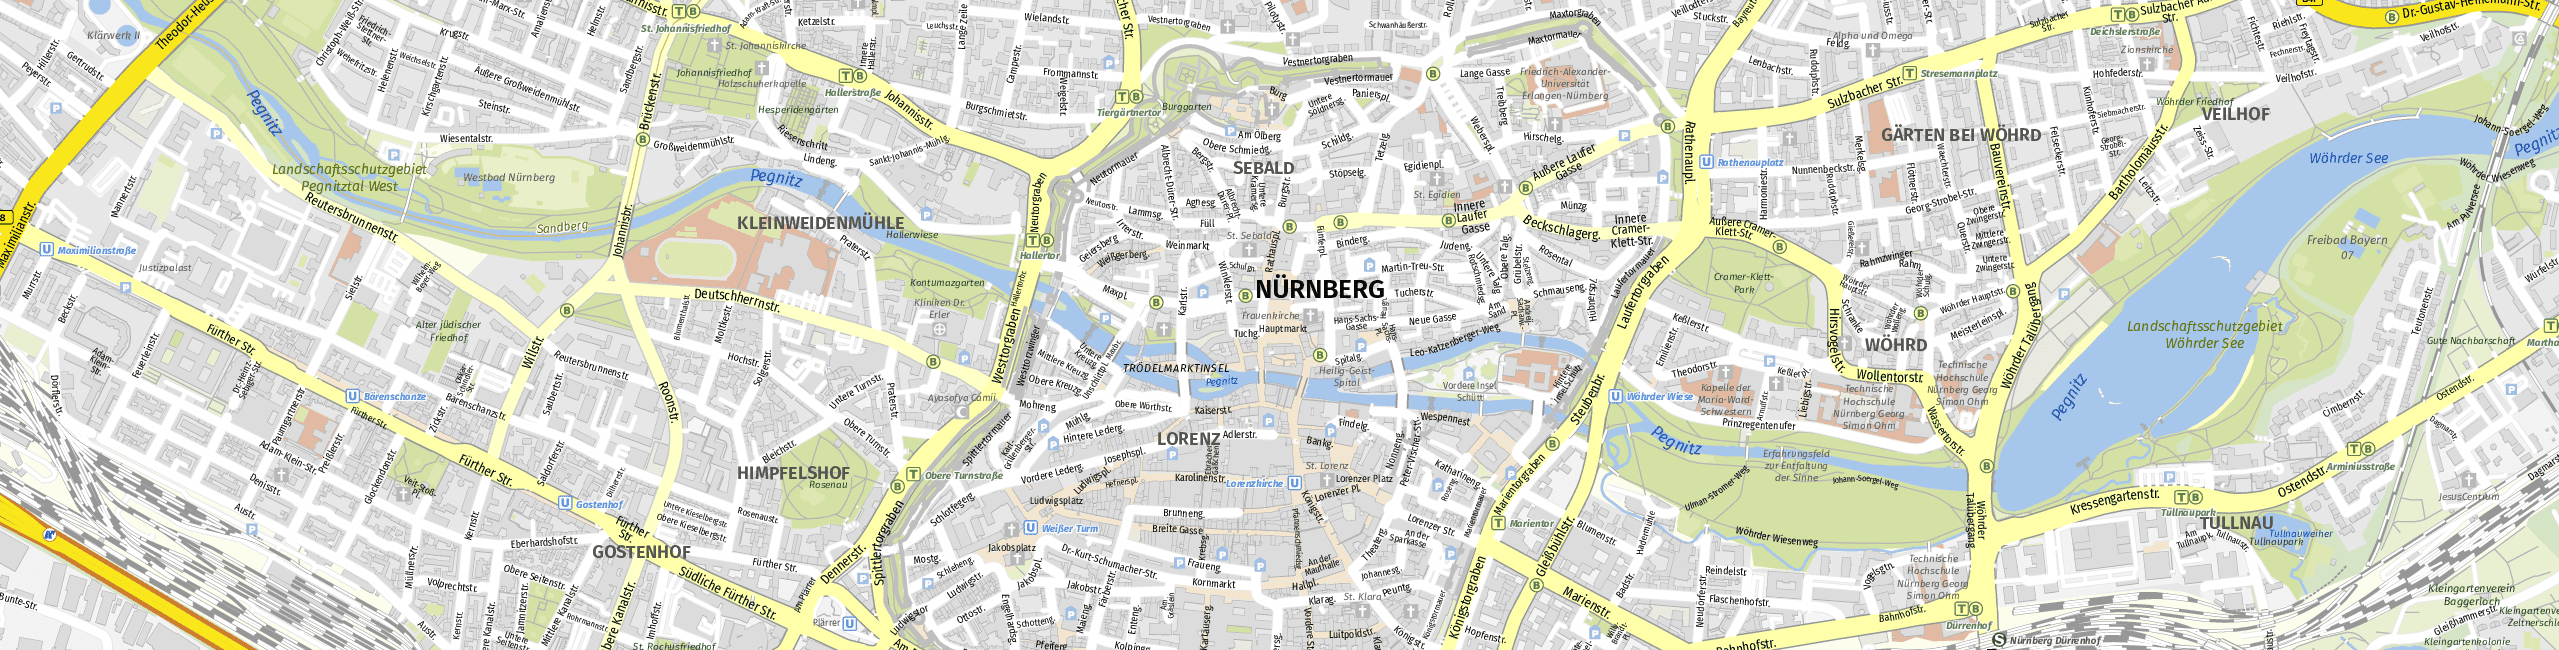 Stadtplan Nuremberg zum Downloaden.